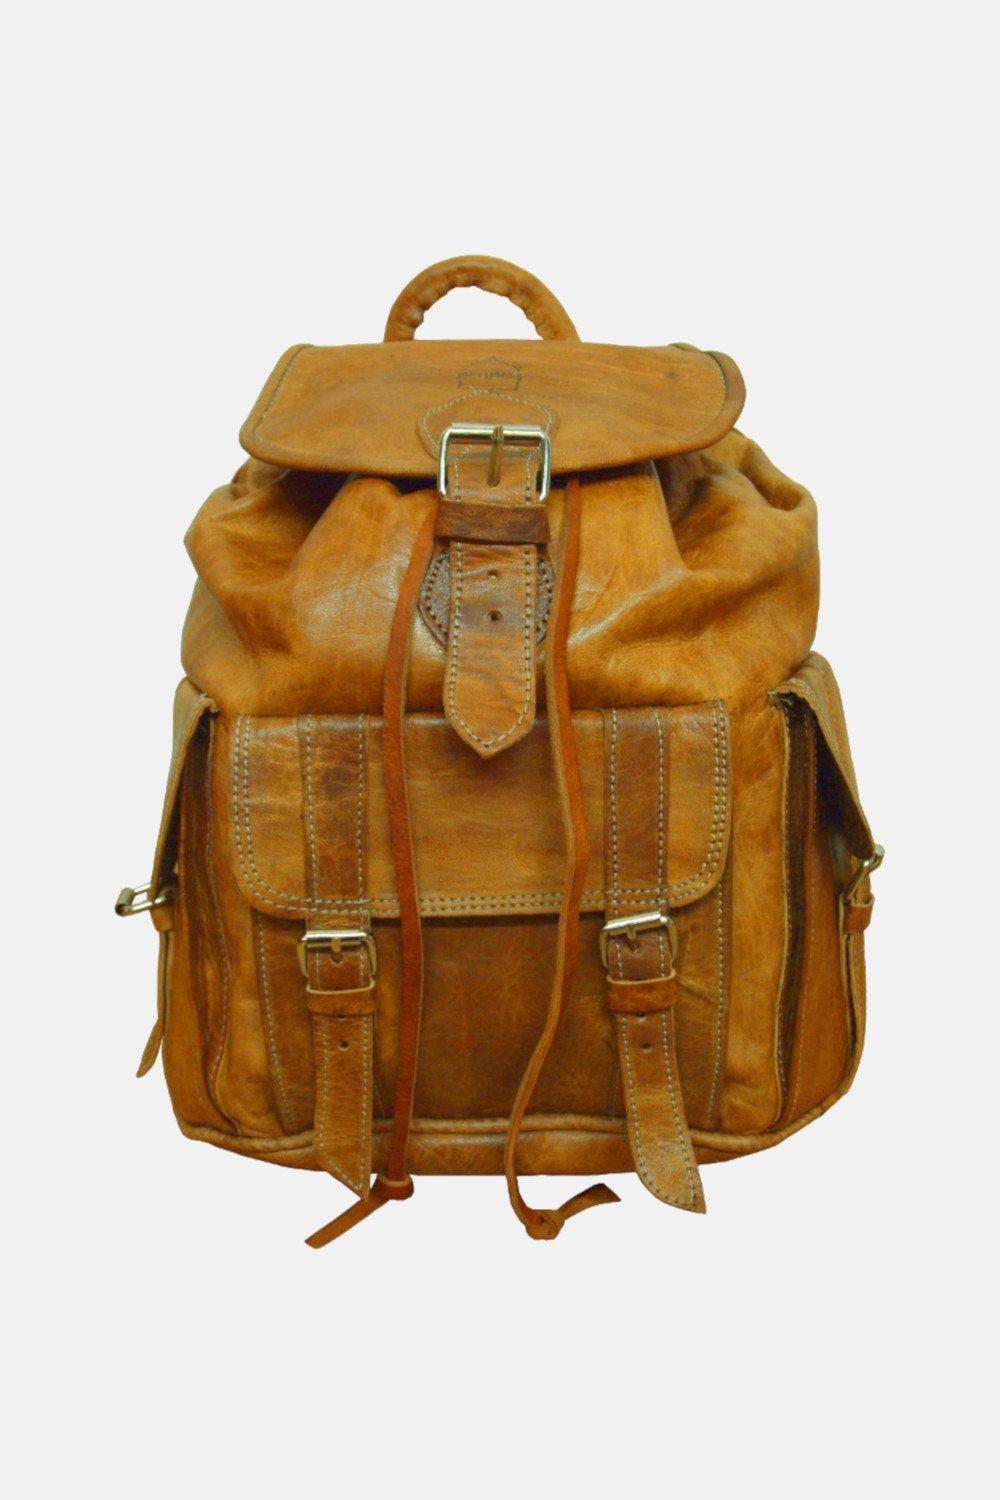 Большой кожаный рюкзак The Larache Berber Leather, коричневый рюкзак кожаный большой сирень lmr 9999 7j